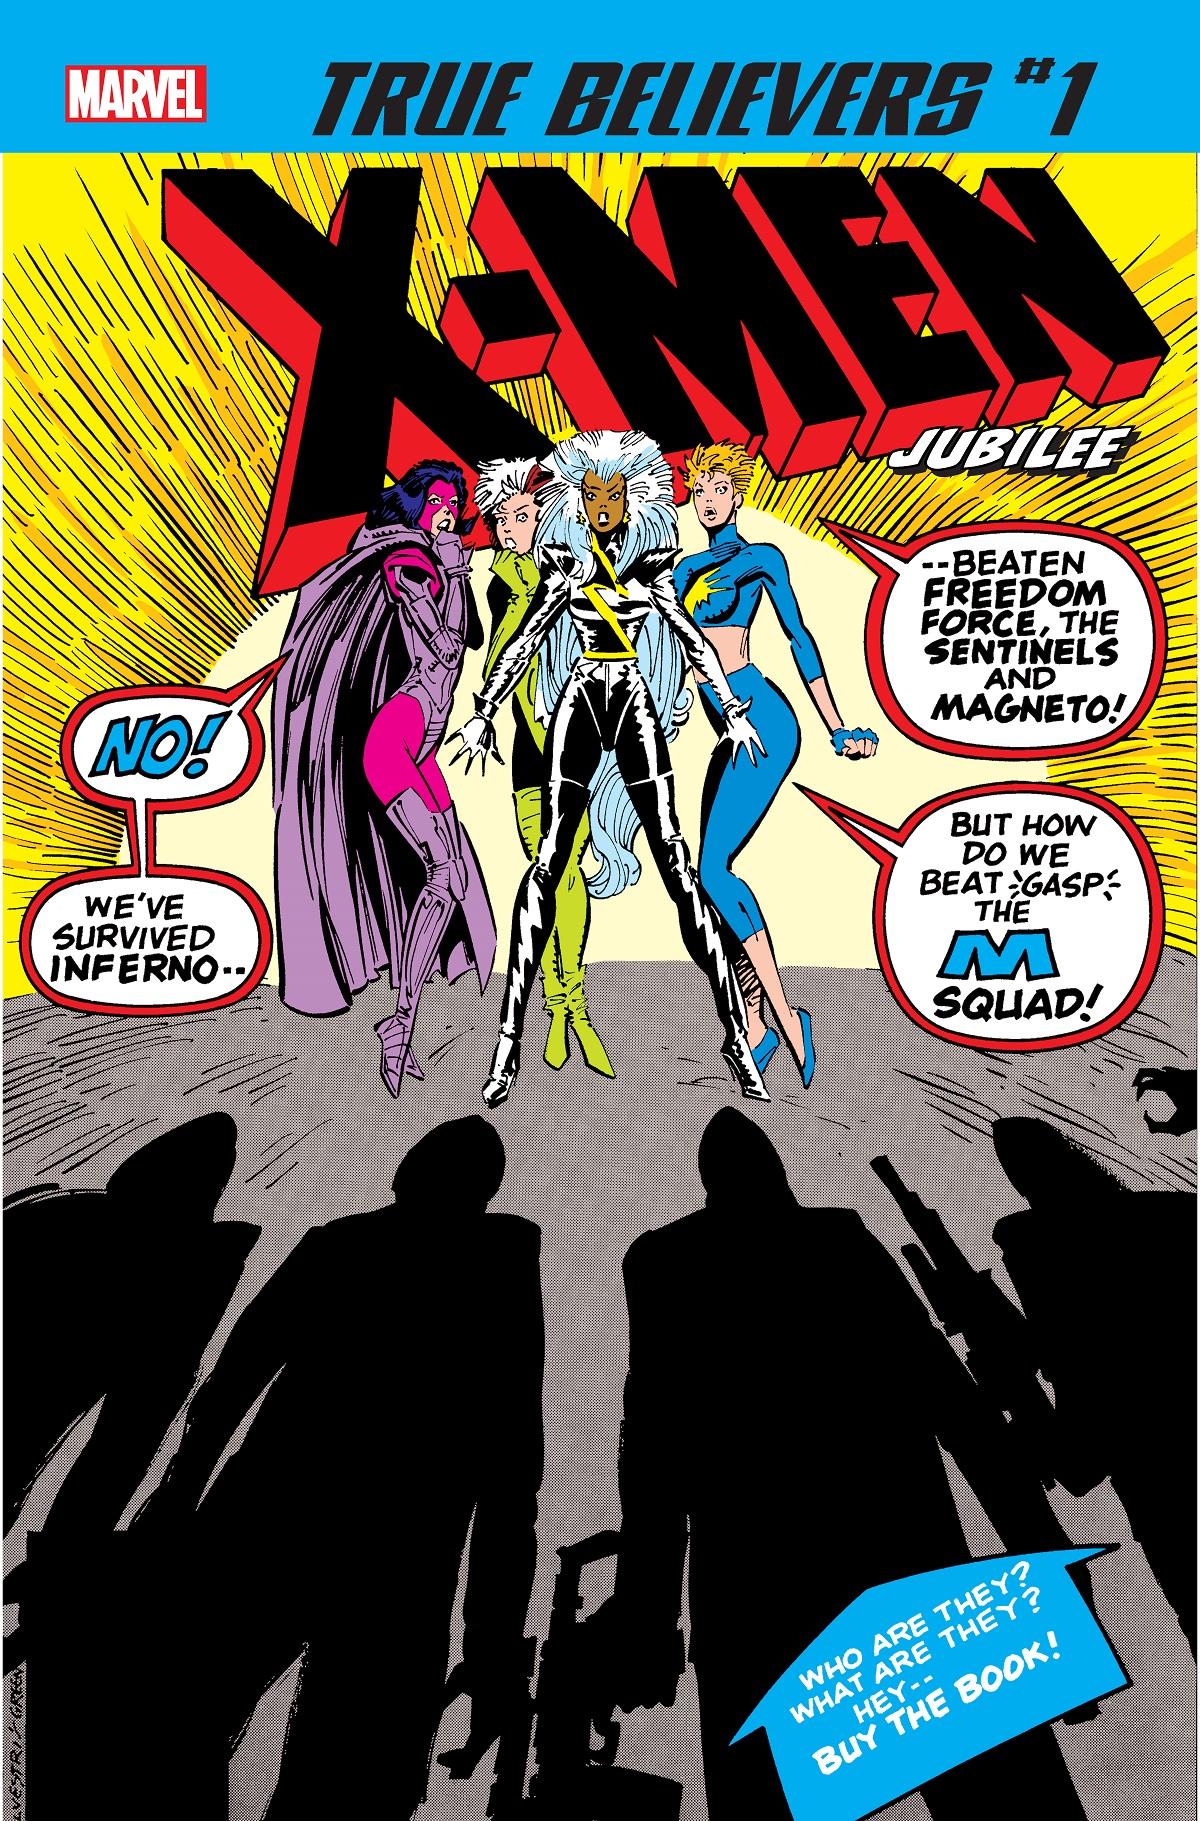 True Believers: X-Men - Jubilee Vol. 1 #1